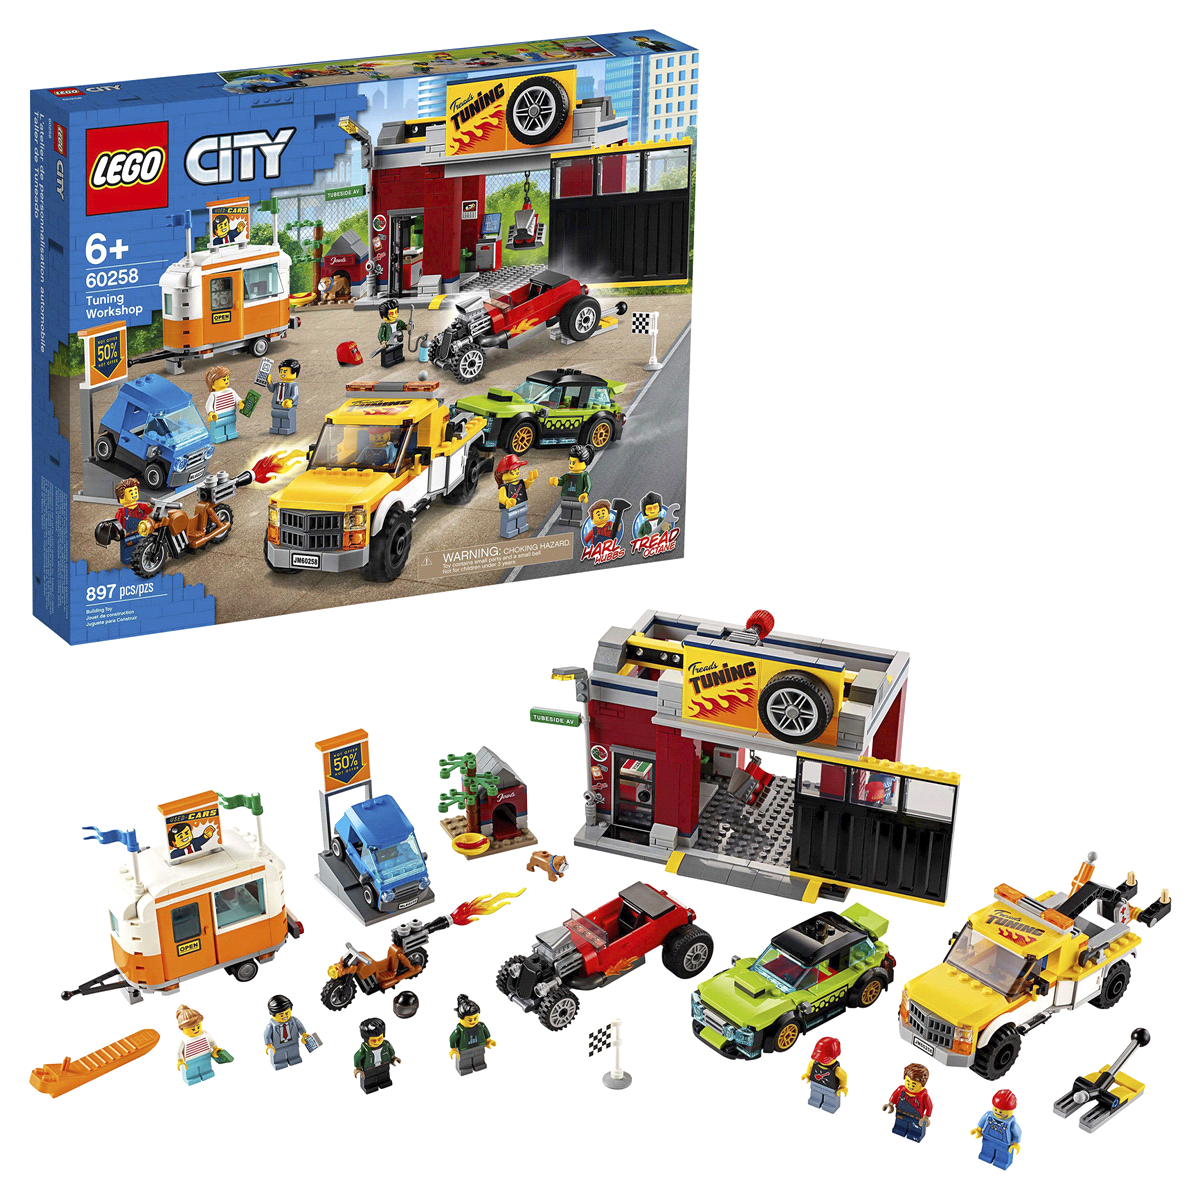 slide 1 of 1, LEGO City Tuning Workshop Toy Car Garage 60258 Cool Building Set, 1 ct